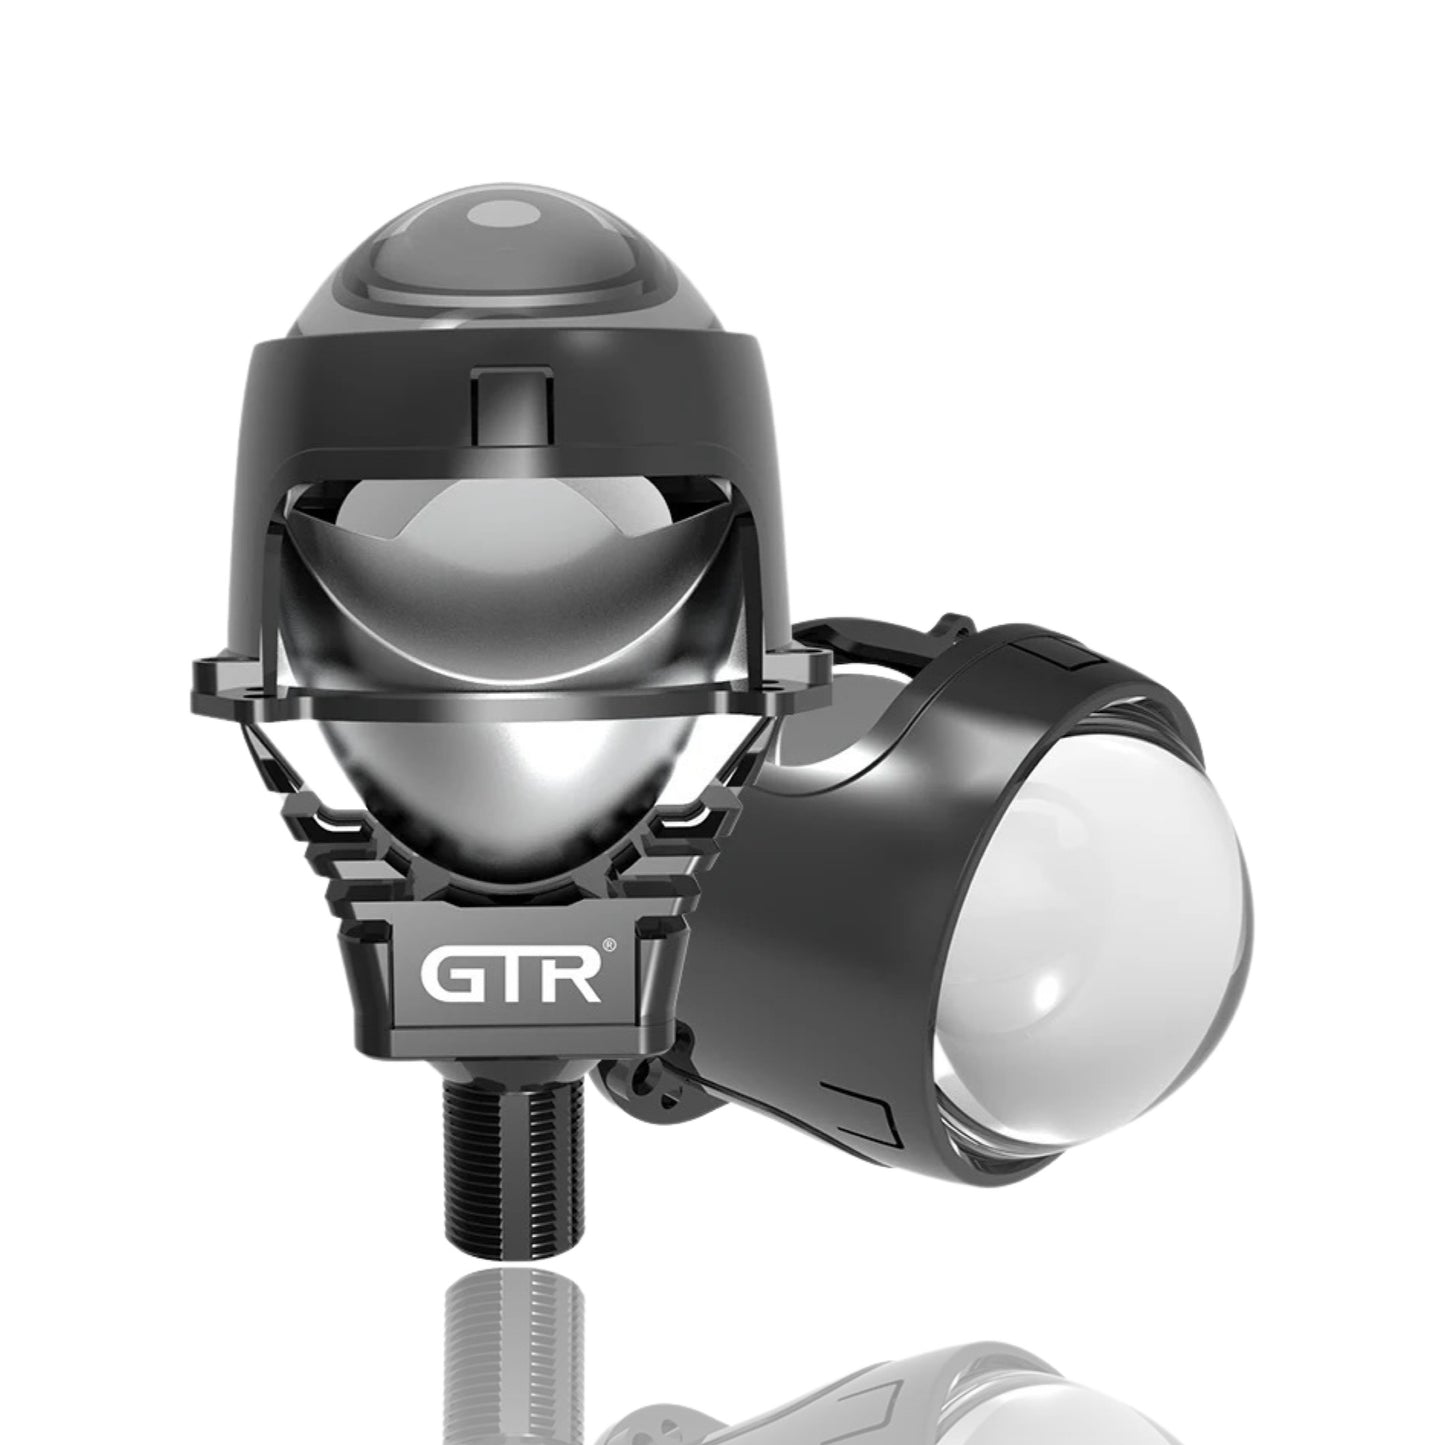 GTR 2.5” LED Projector